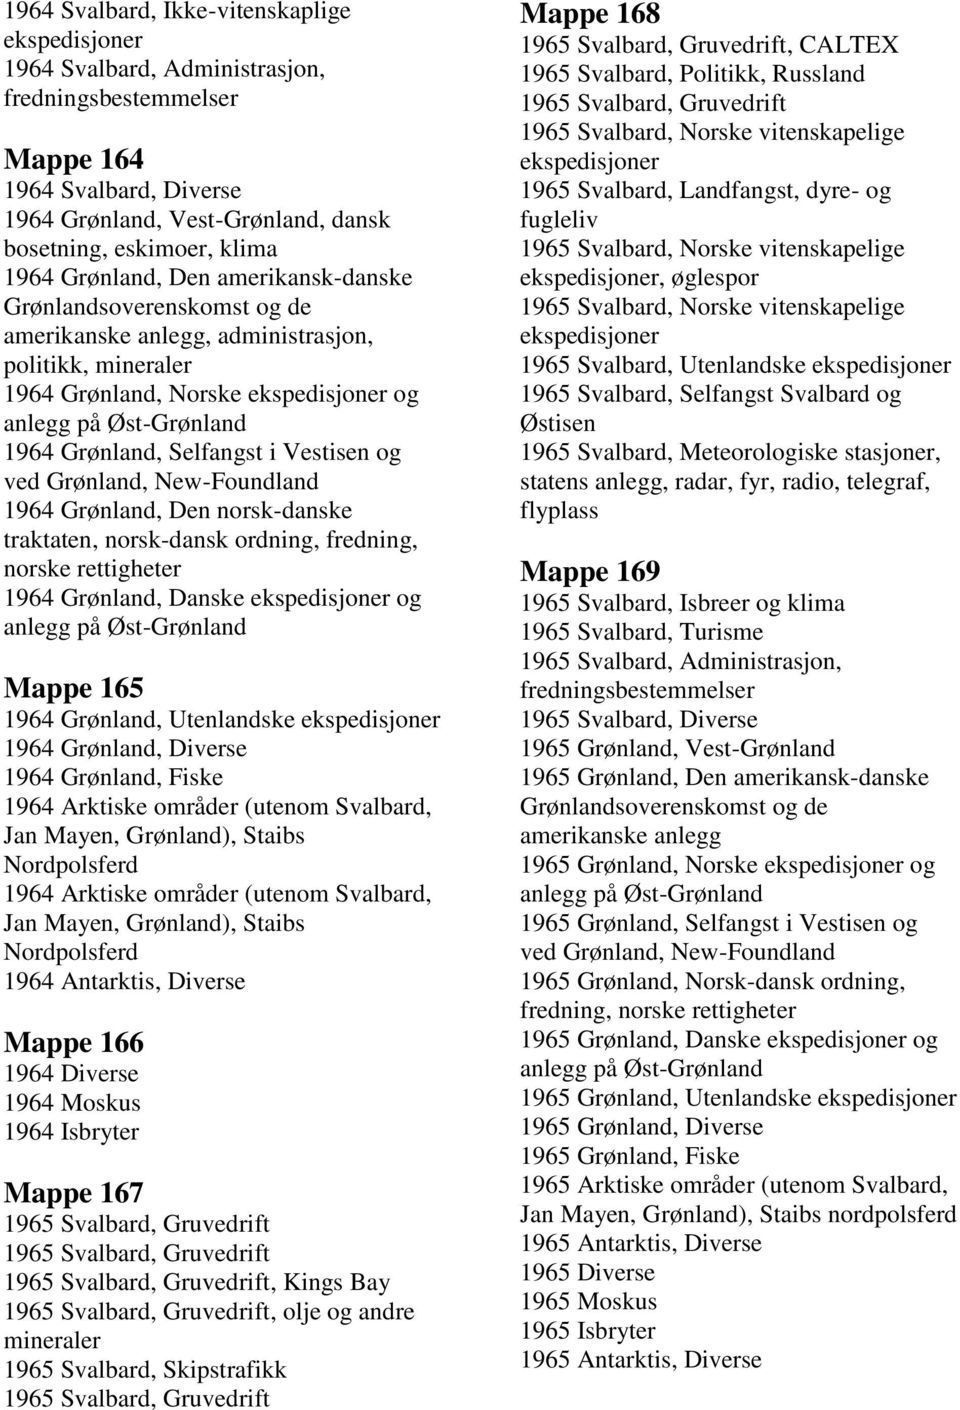 1964 Grønland, Danske og Mappe 165 1964 Grønland, Utenlandske 1964 Grønland, Diverse 1964 Grønland, Fiske 1964 Arktiske områder (utenom Svalbard, Jan Mayen, Grønland), Staibs Nordpolsferd 1964